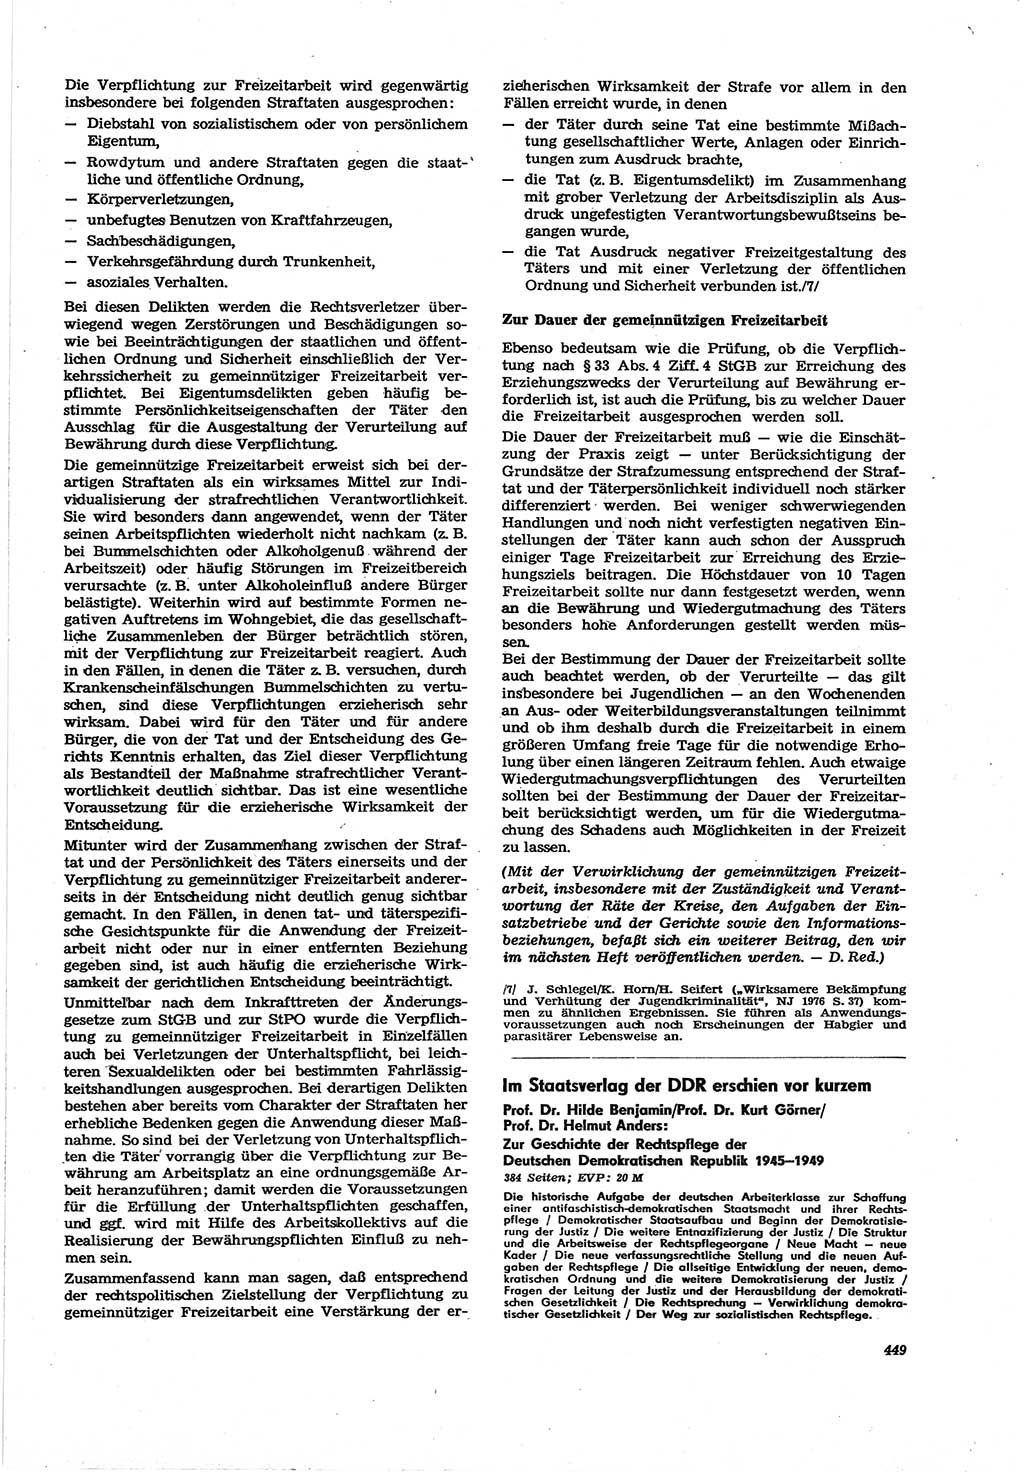 Neue Justiz (NJ), Zeitschrift für Recht und Rechtswissenschaft [Deutsche Demokratische Republik (DDR)], 30. Jahrgang 1976, Seite 449 (NJ DDR 1976, S. 449)